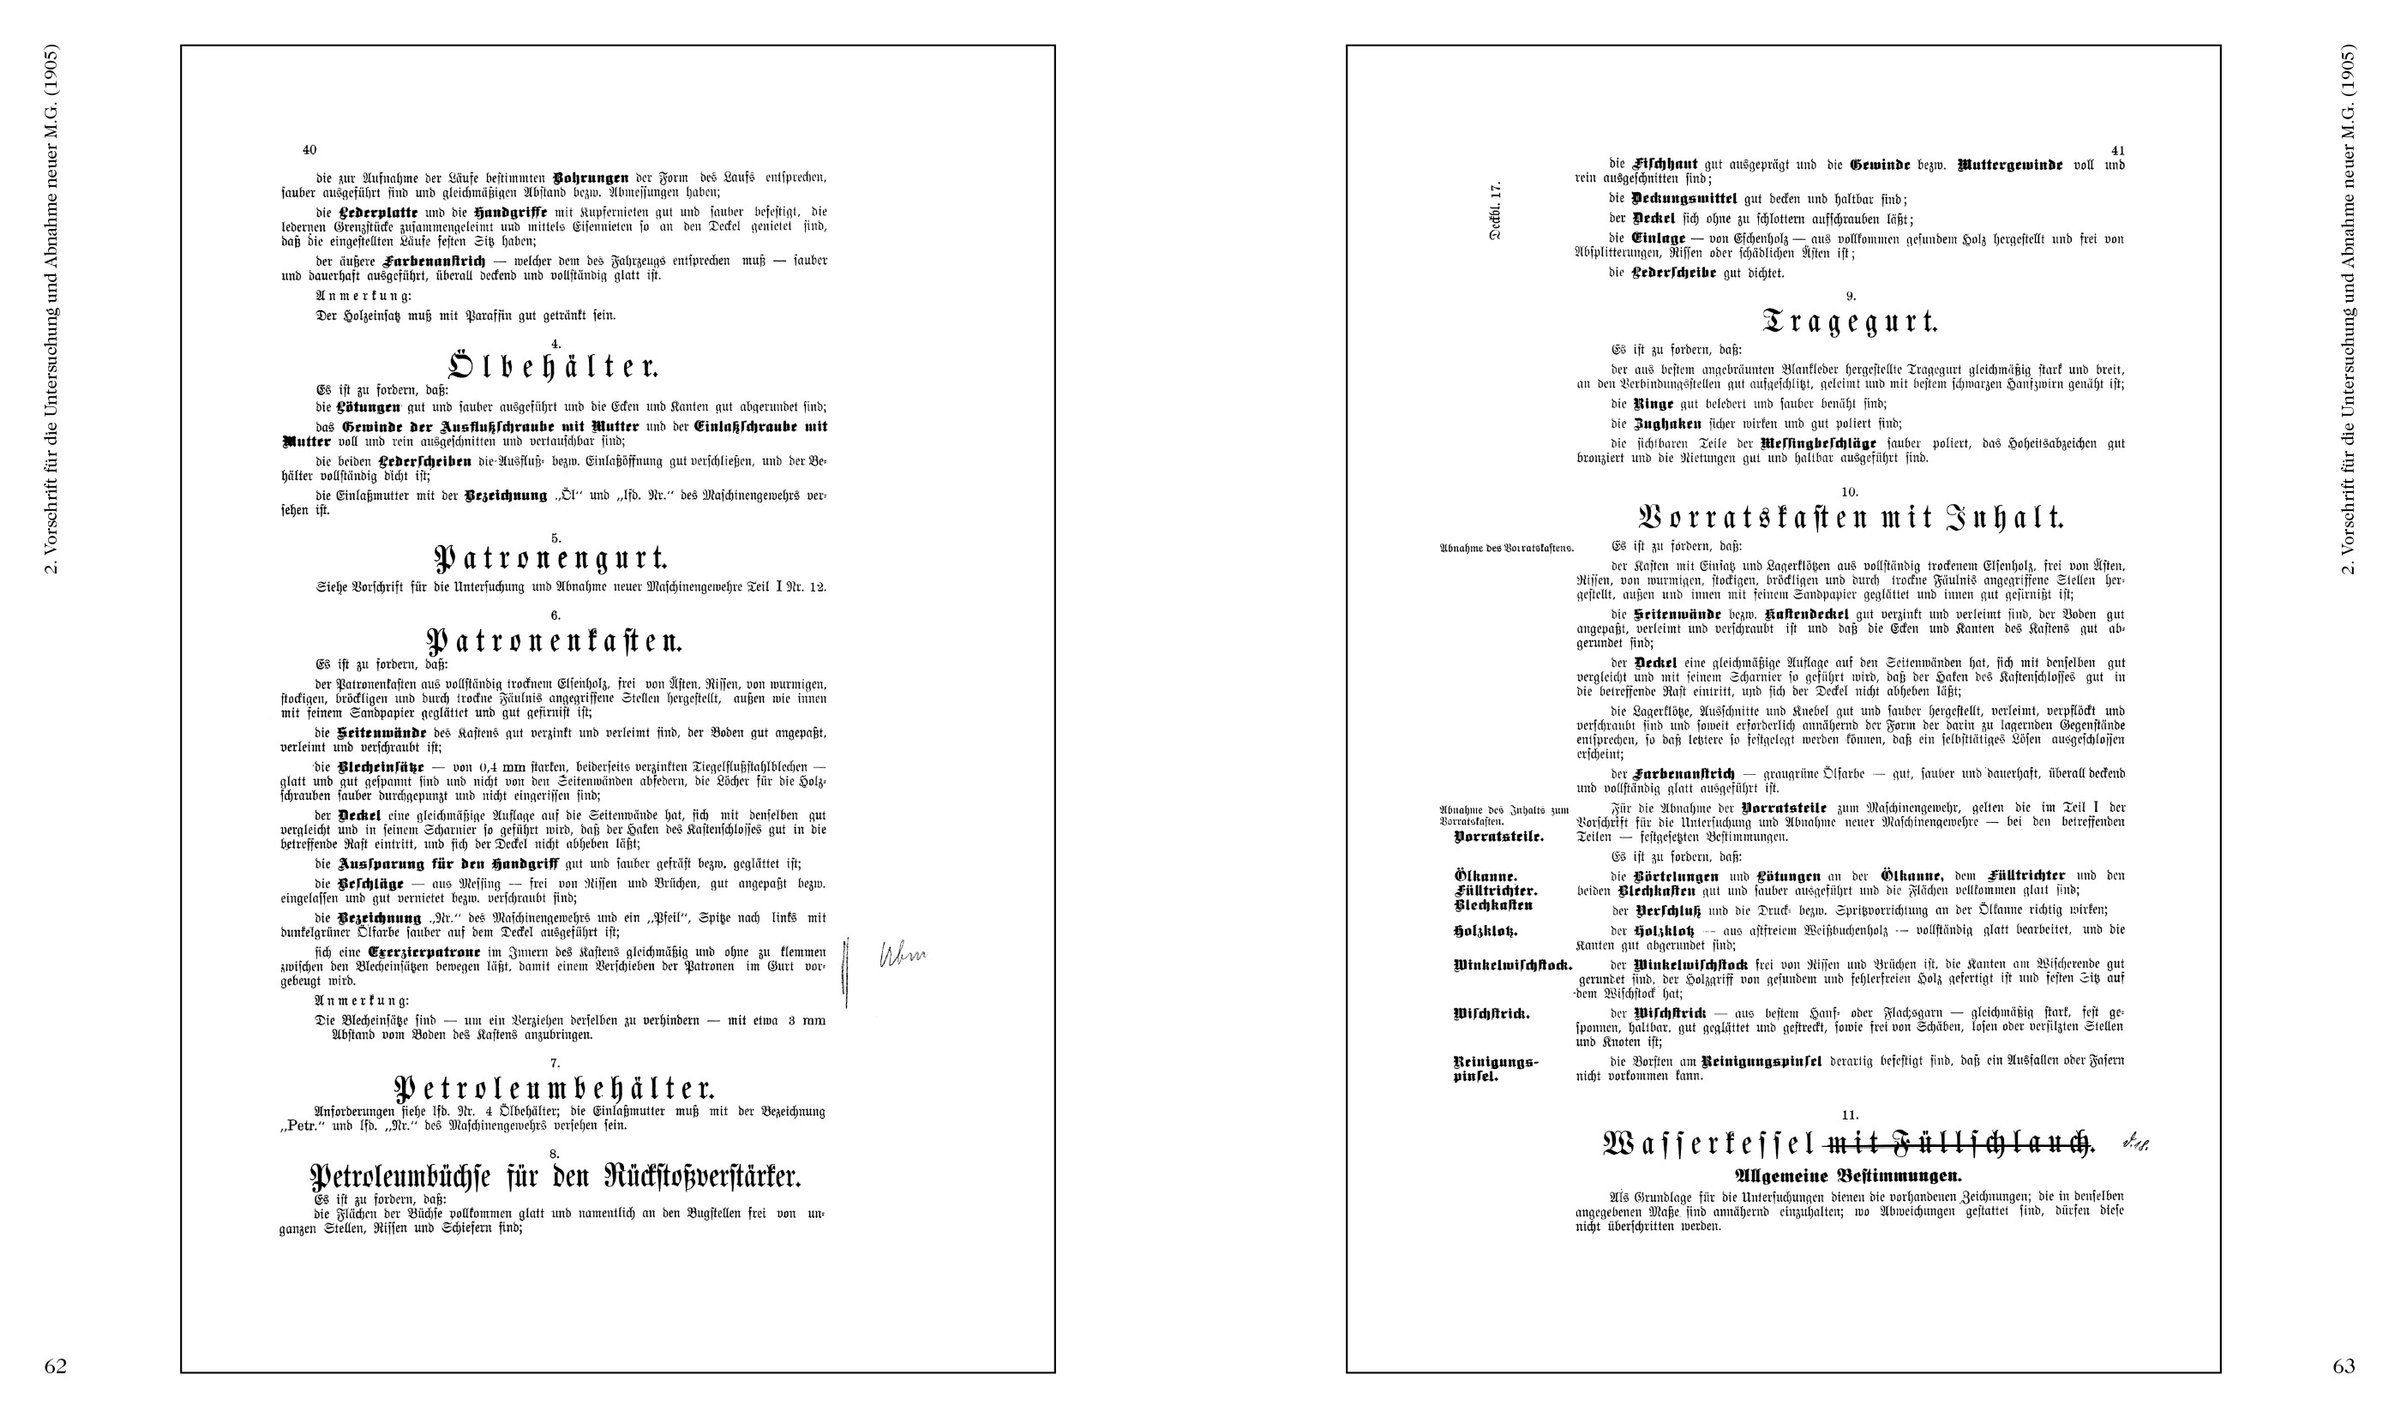 Buchholz/Brüggen Vorschriften für deutsche Maschinengewehre